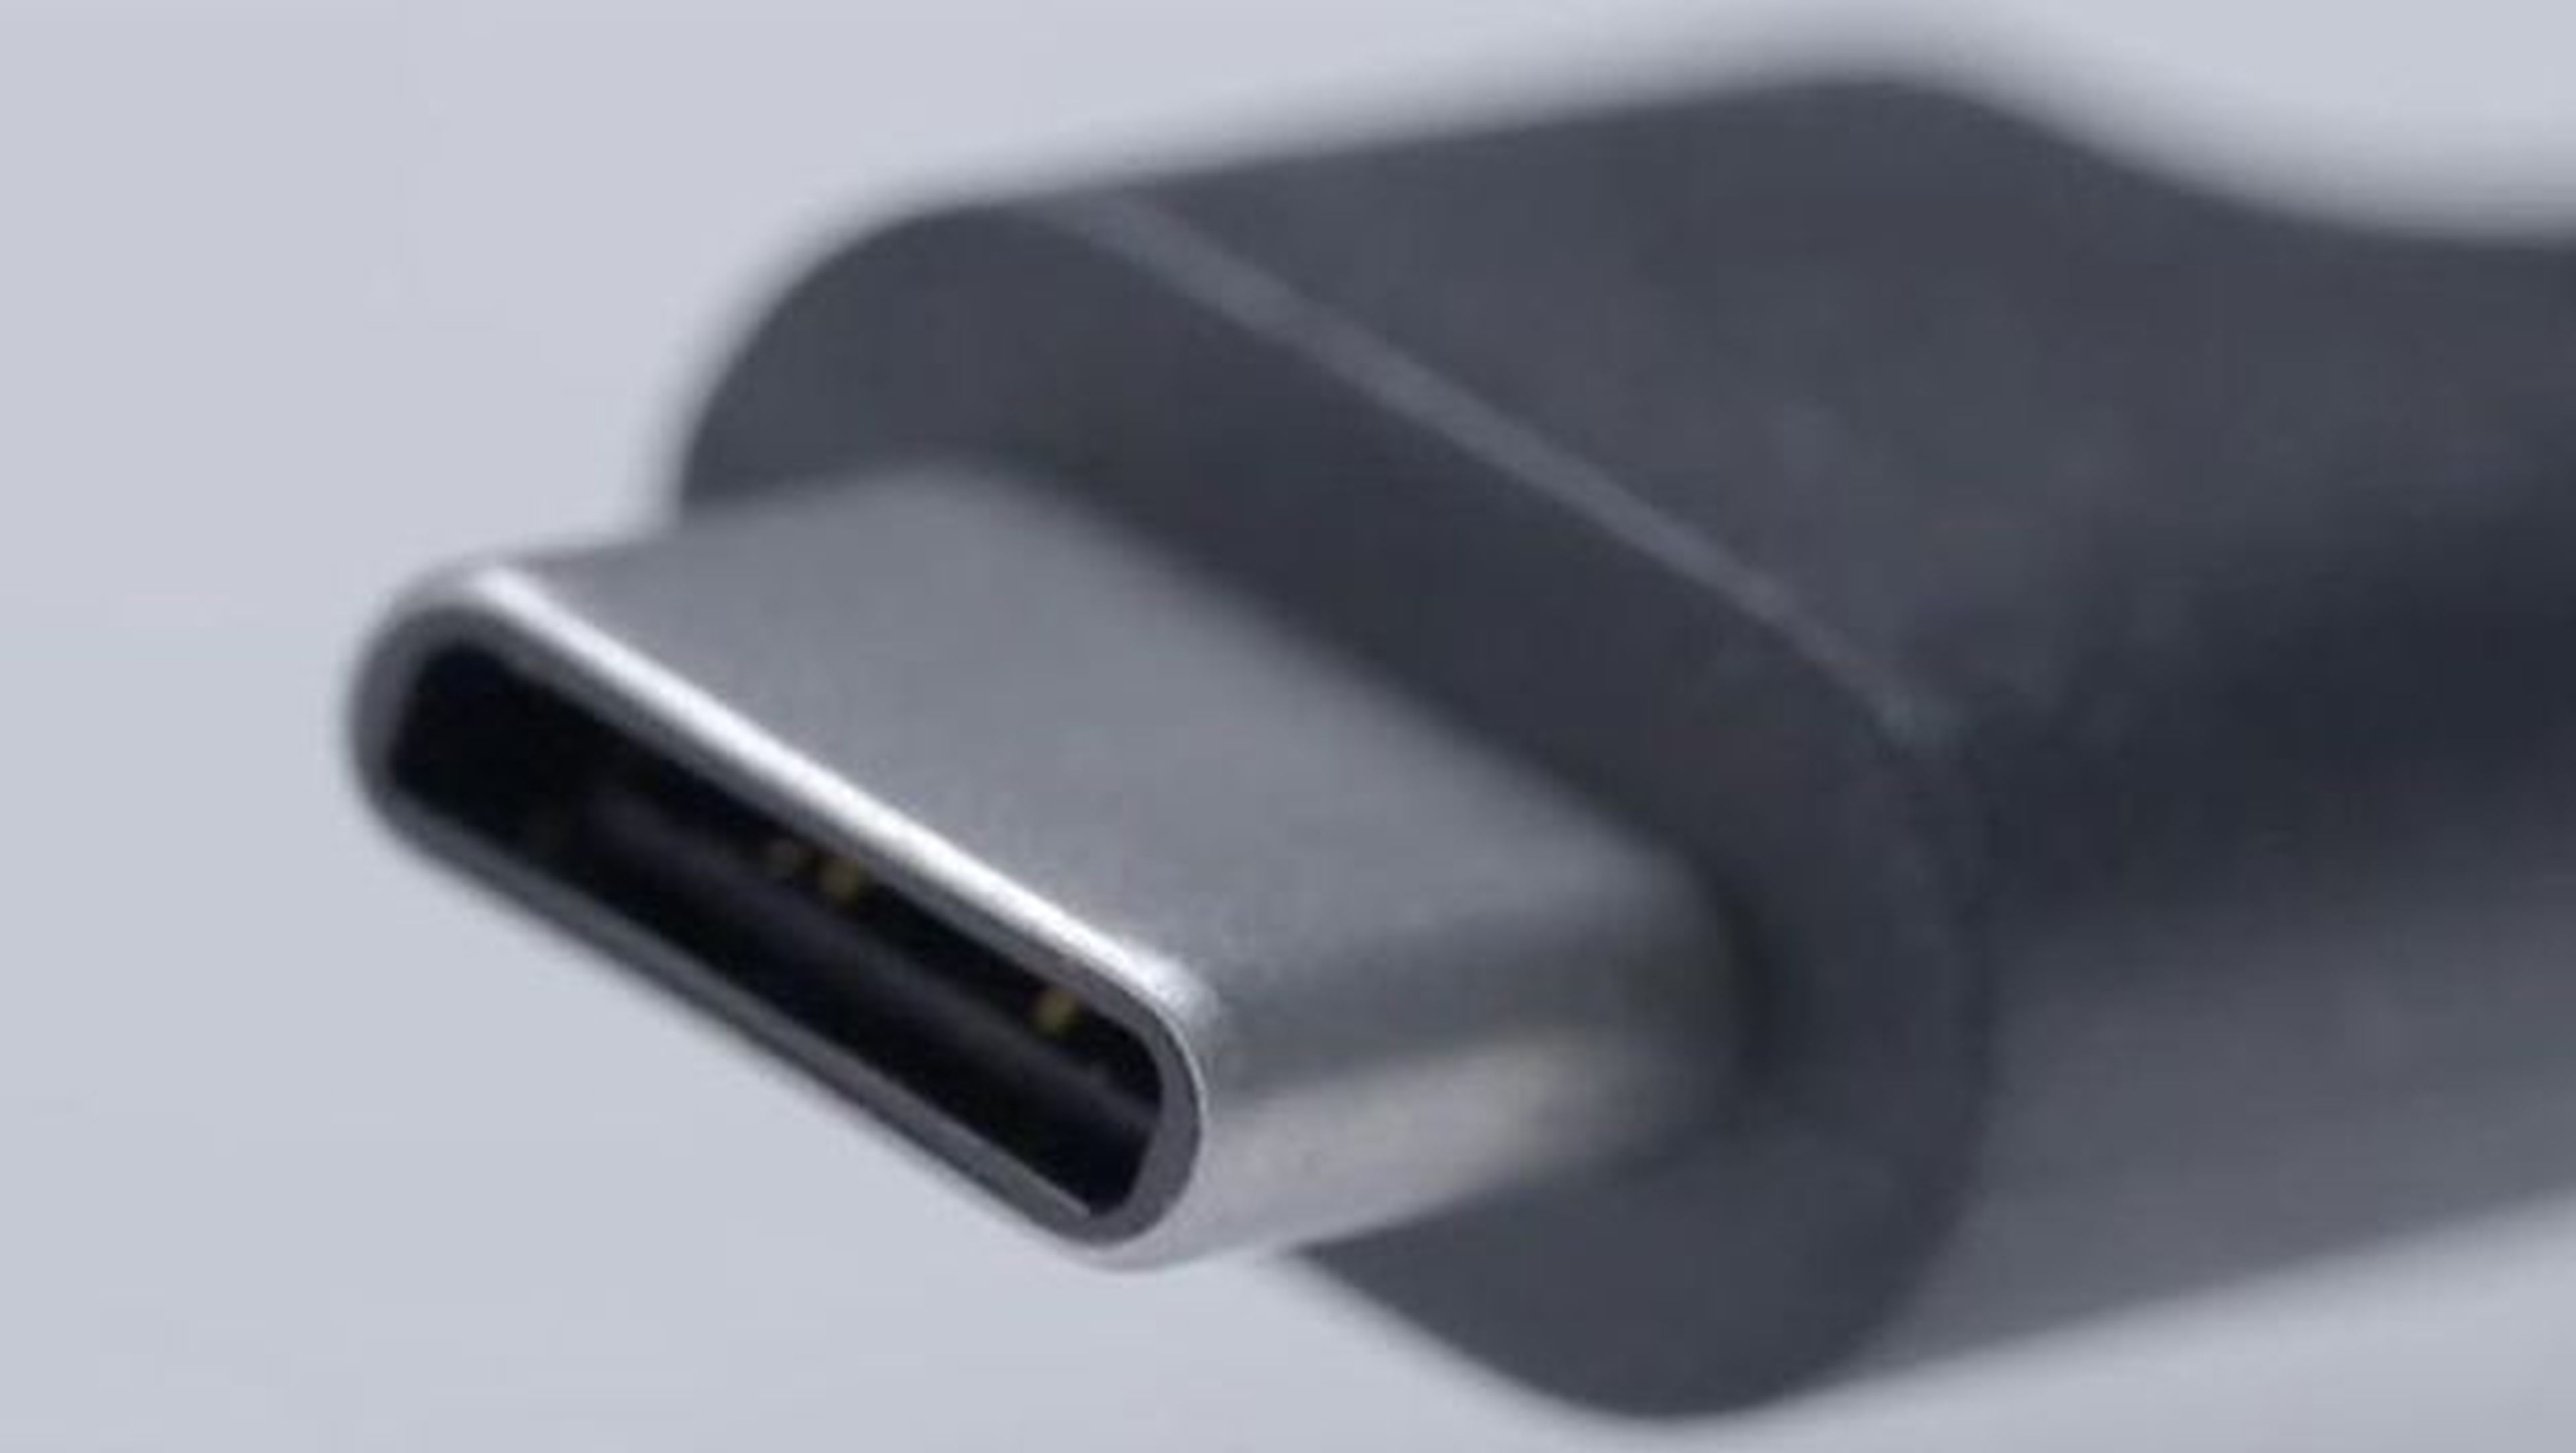 Novedades sobre el próximo iPhone: nuevo cable USB Tipo C en lugar del Lightning